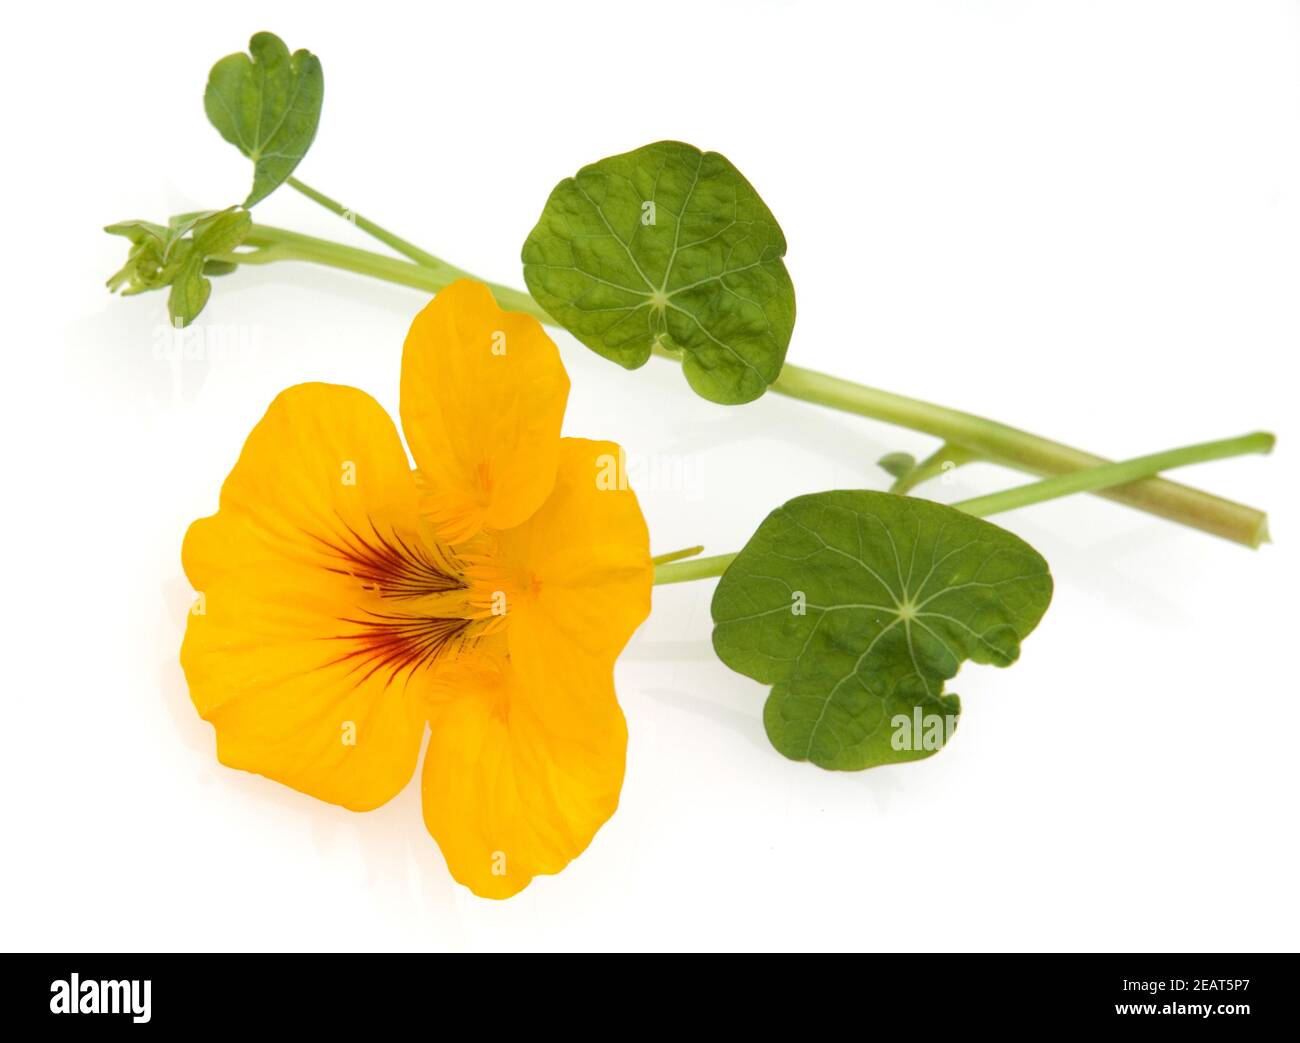 Kapuzinerkresse, Tropaeolum majus, Rankpflanze, Essblume, essbare Blumen, Heilpflanzen, - Stock Photo